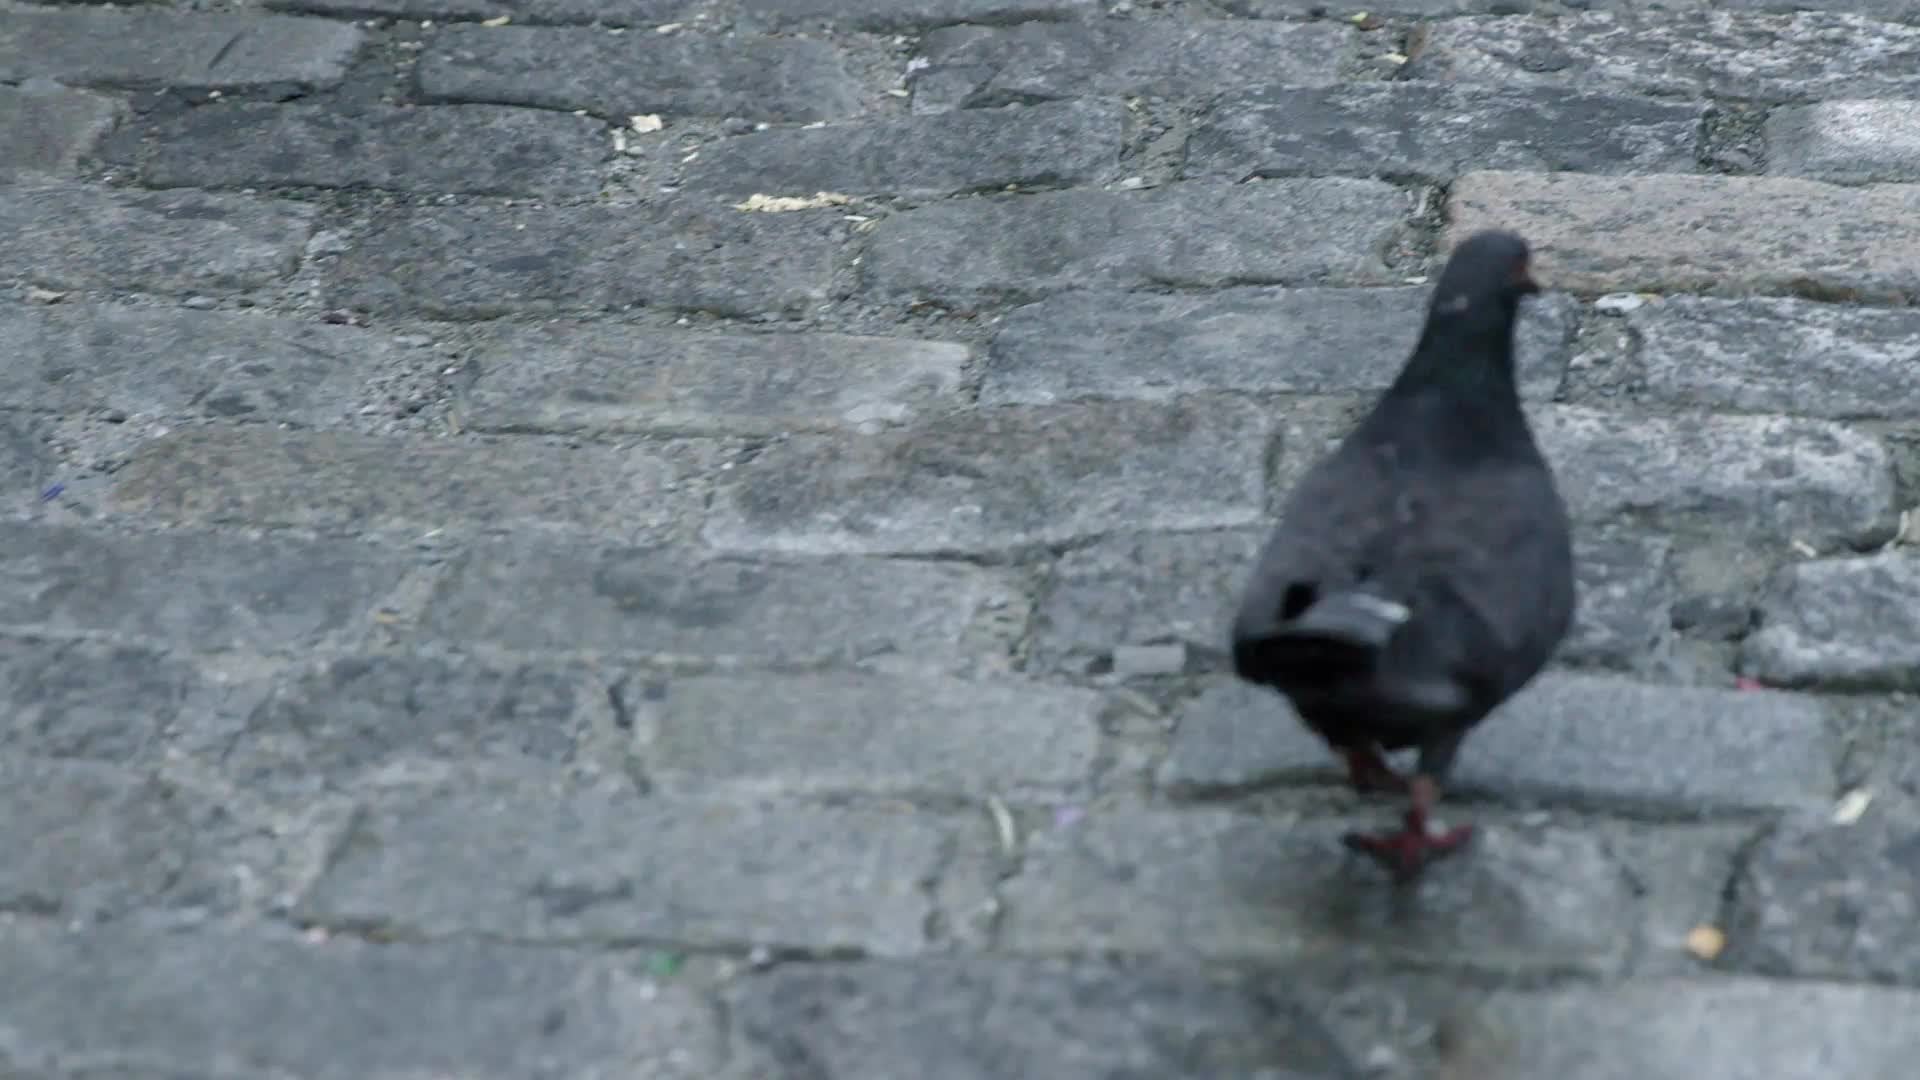 pigeon walking on cobblestone street, bird in 4K slow motion